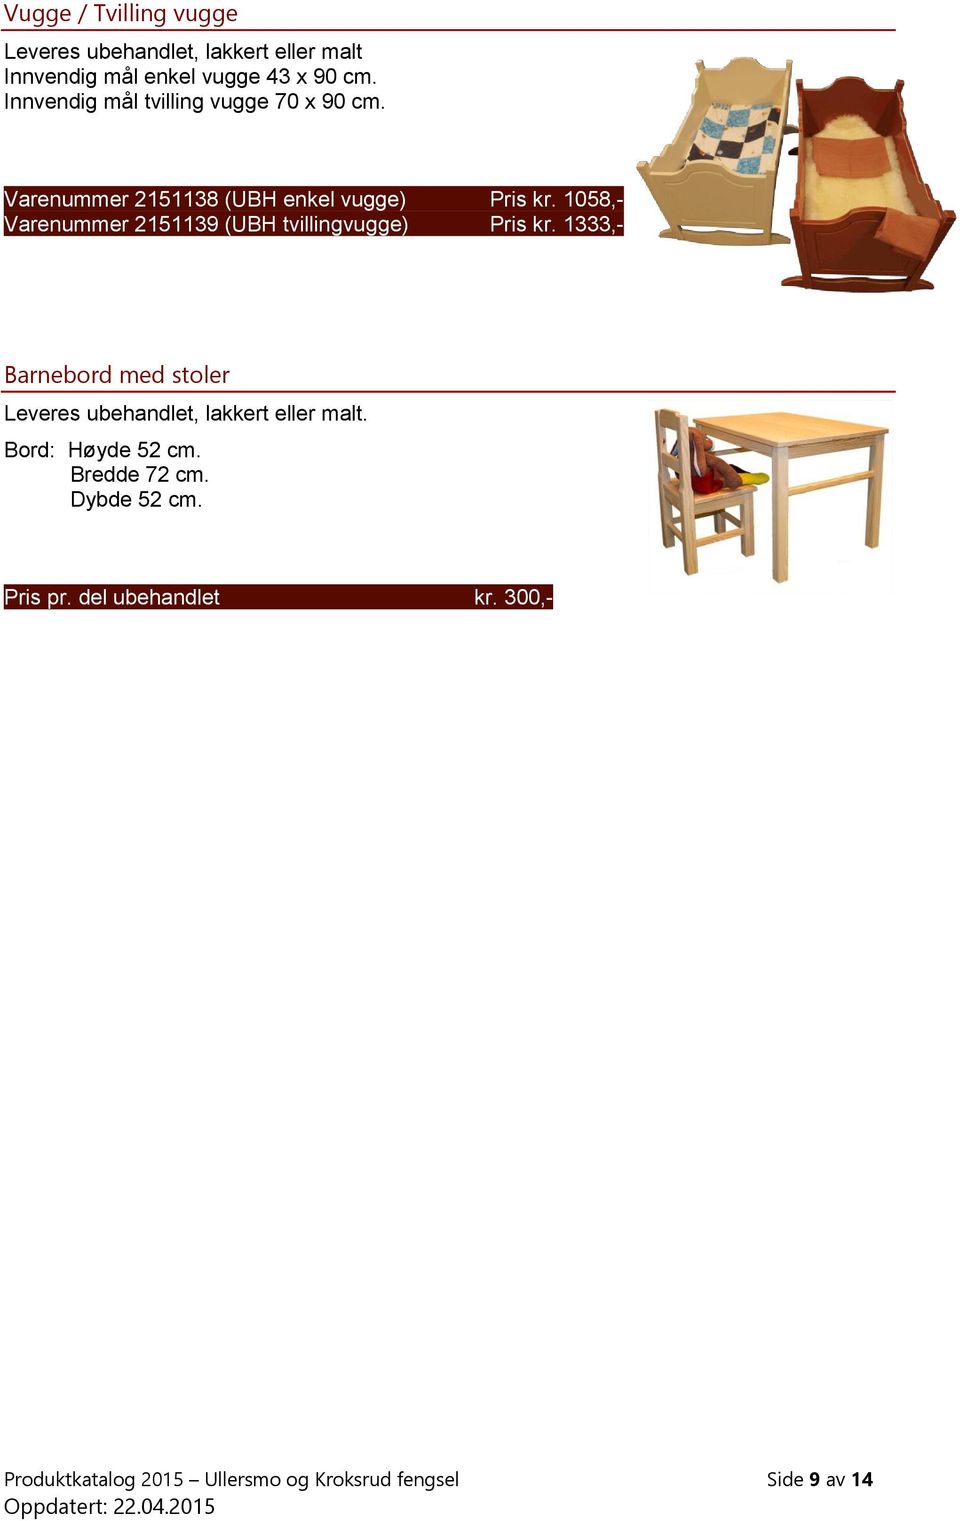 1058,- Varenummer 2151139 (UBH tvillingvugge) Pris kr. 1333,- Barnebord med stoler Bord: Høyde 52 cm.